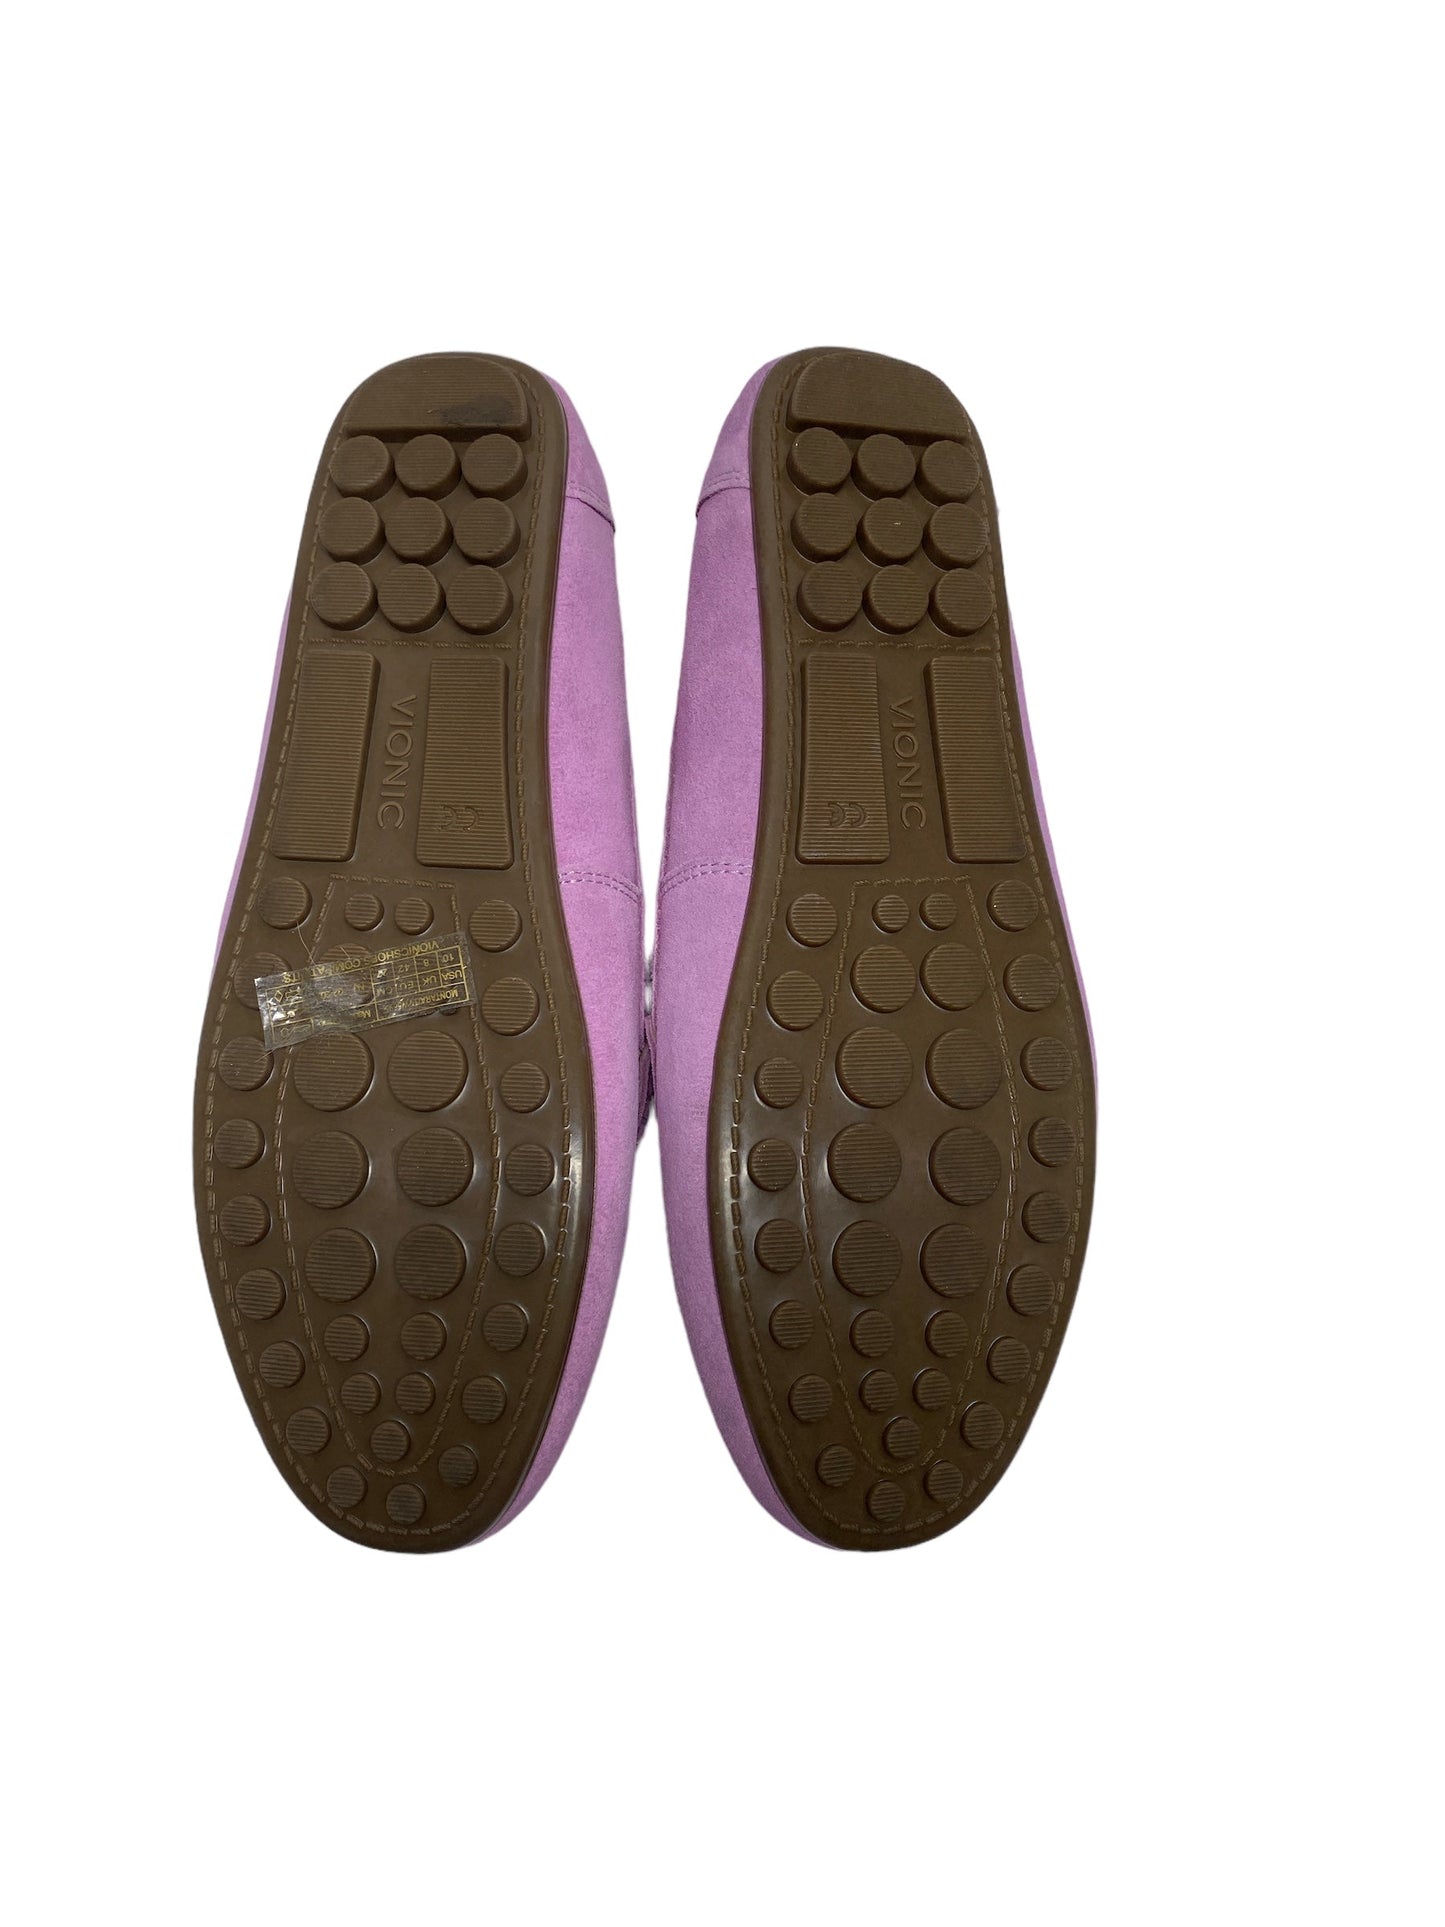 Purple Shoes Flats Vionic, Size 10